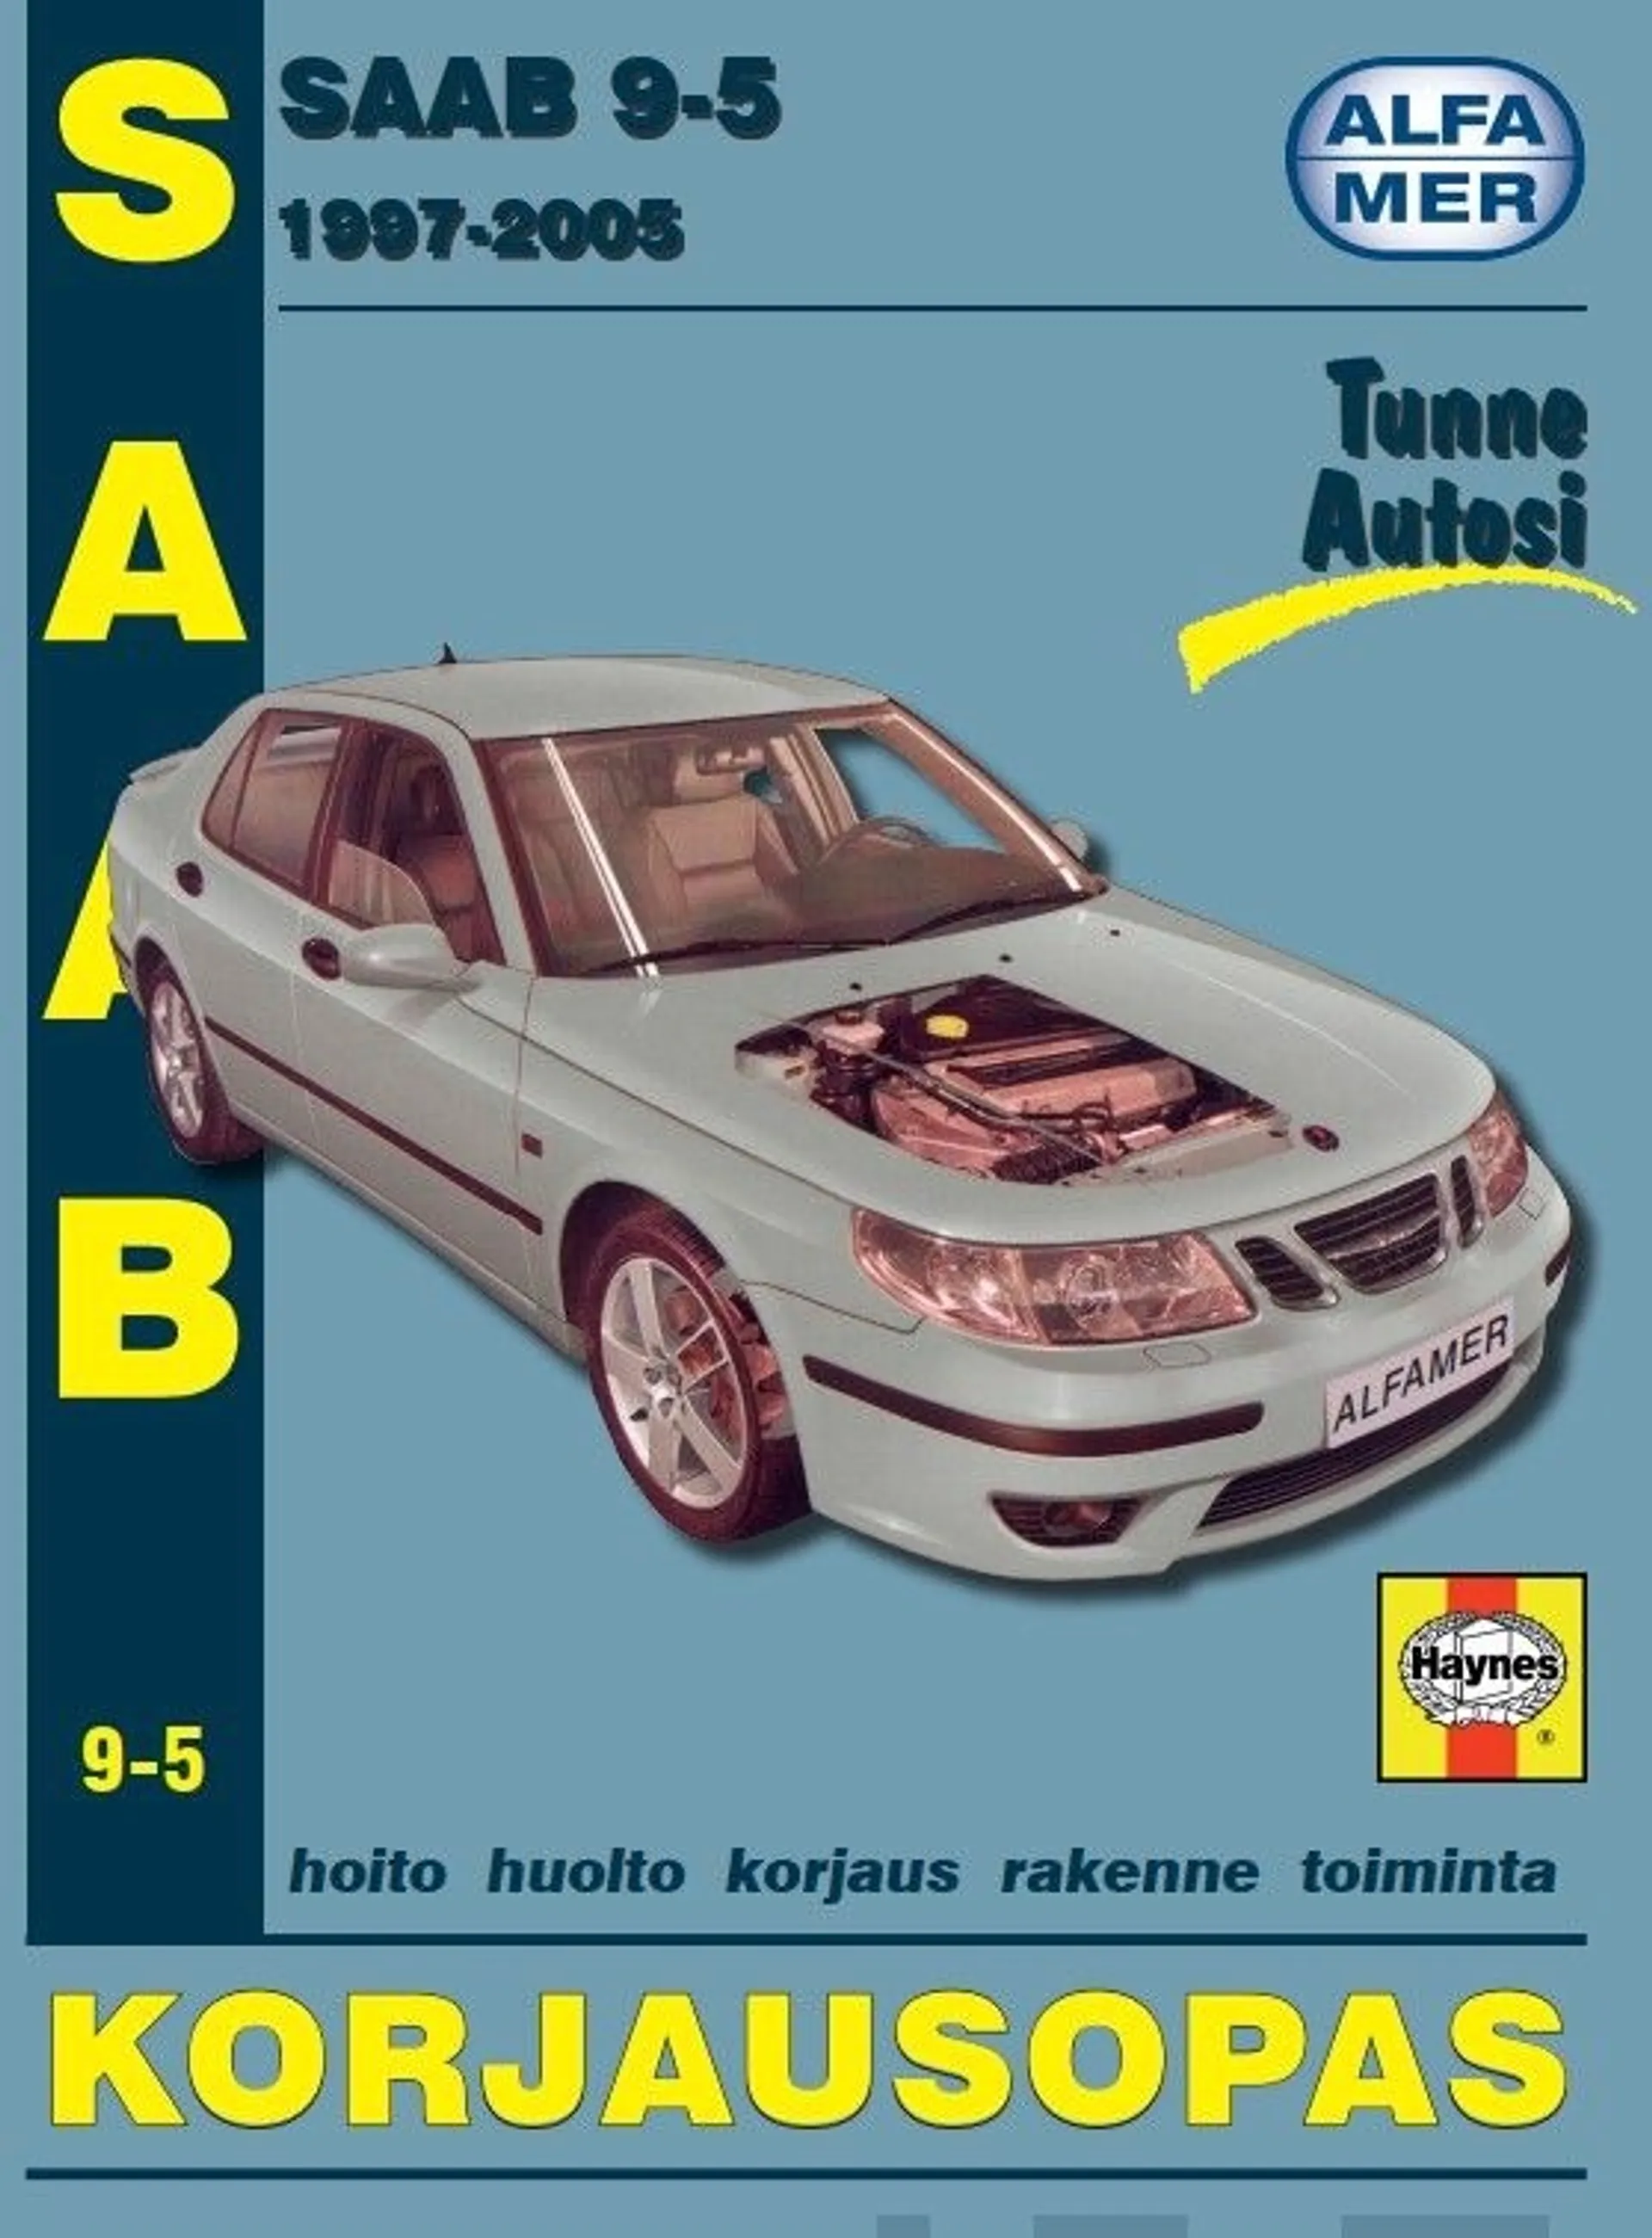 Mauno, Saab 9-5 1997-2005